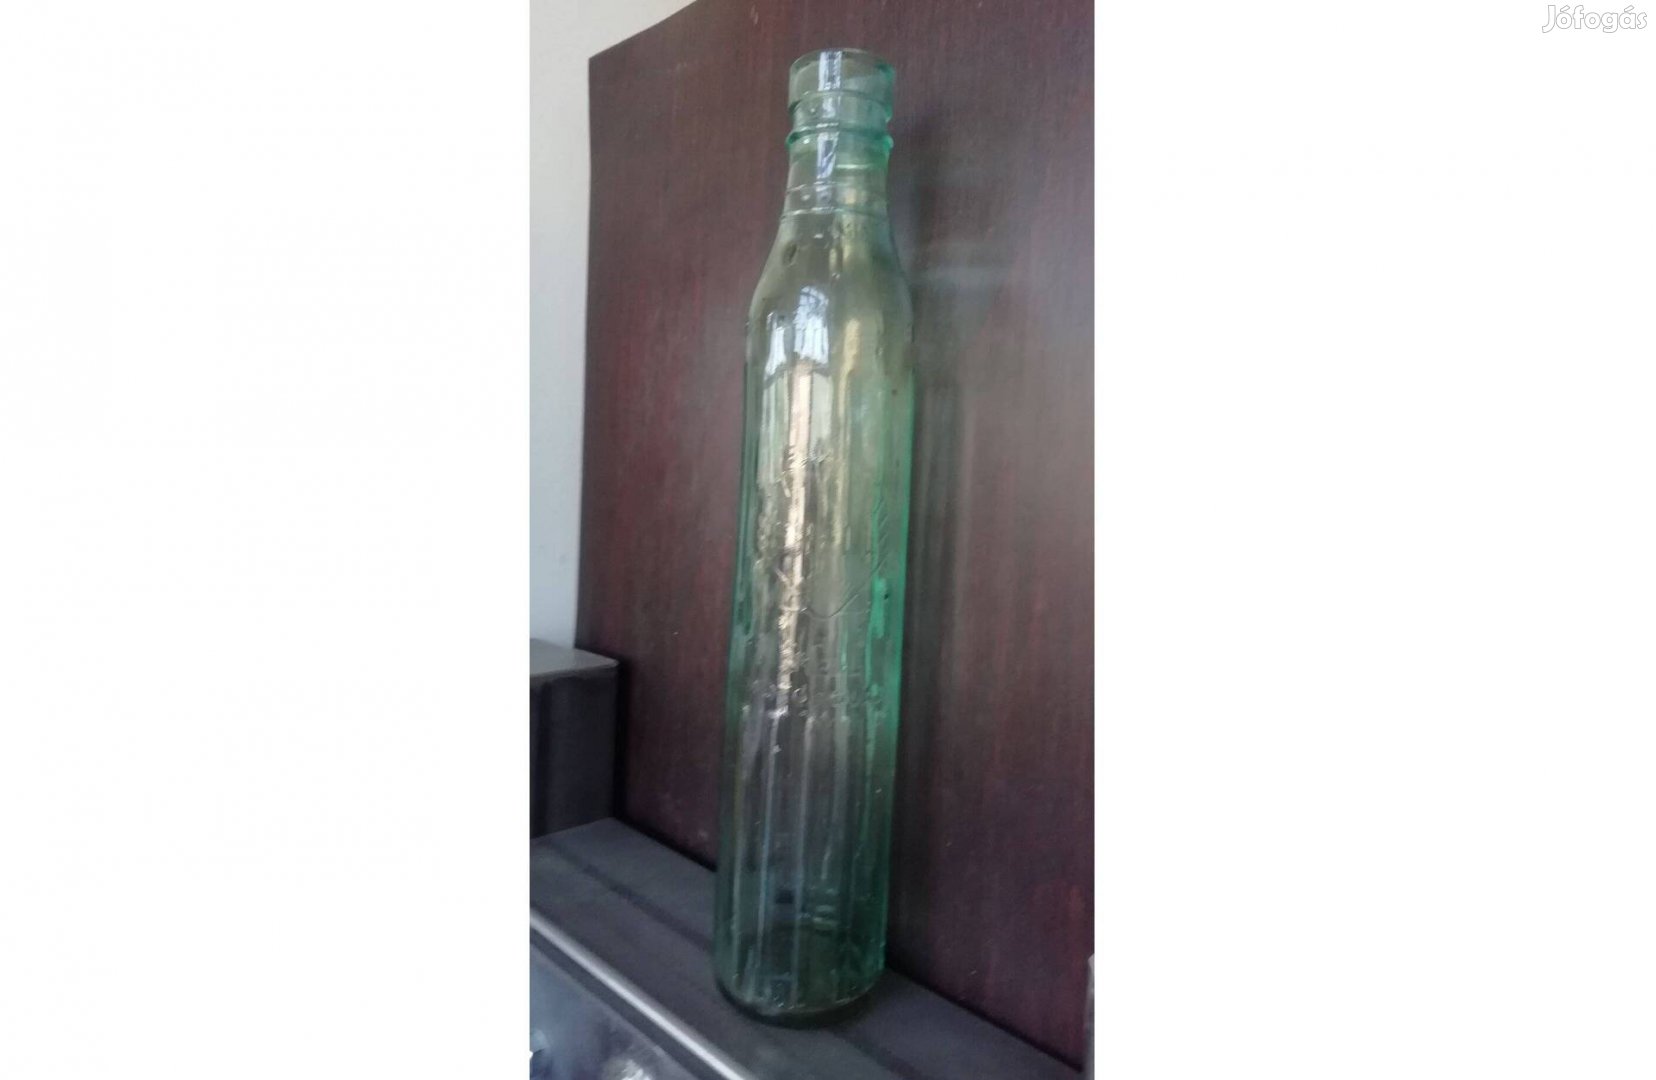 Shell motorolaj üveg az 1920-30-as évekből, dekorációnak, gyűjtőknek